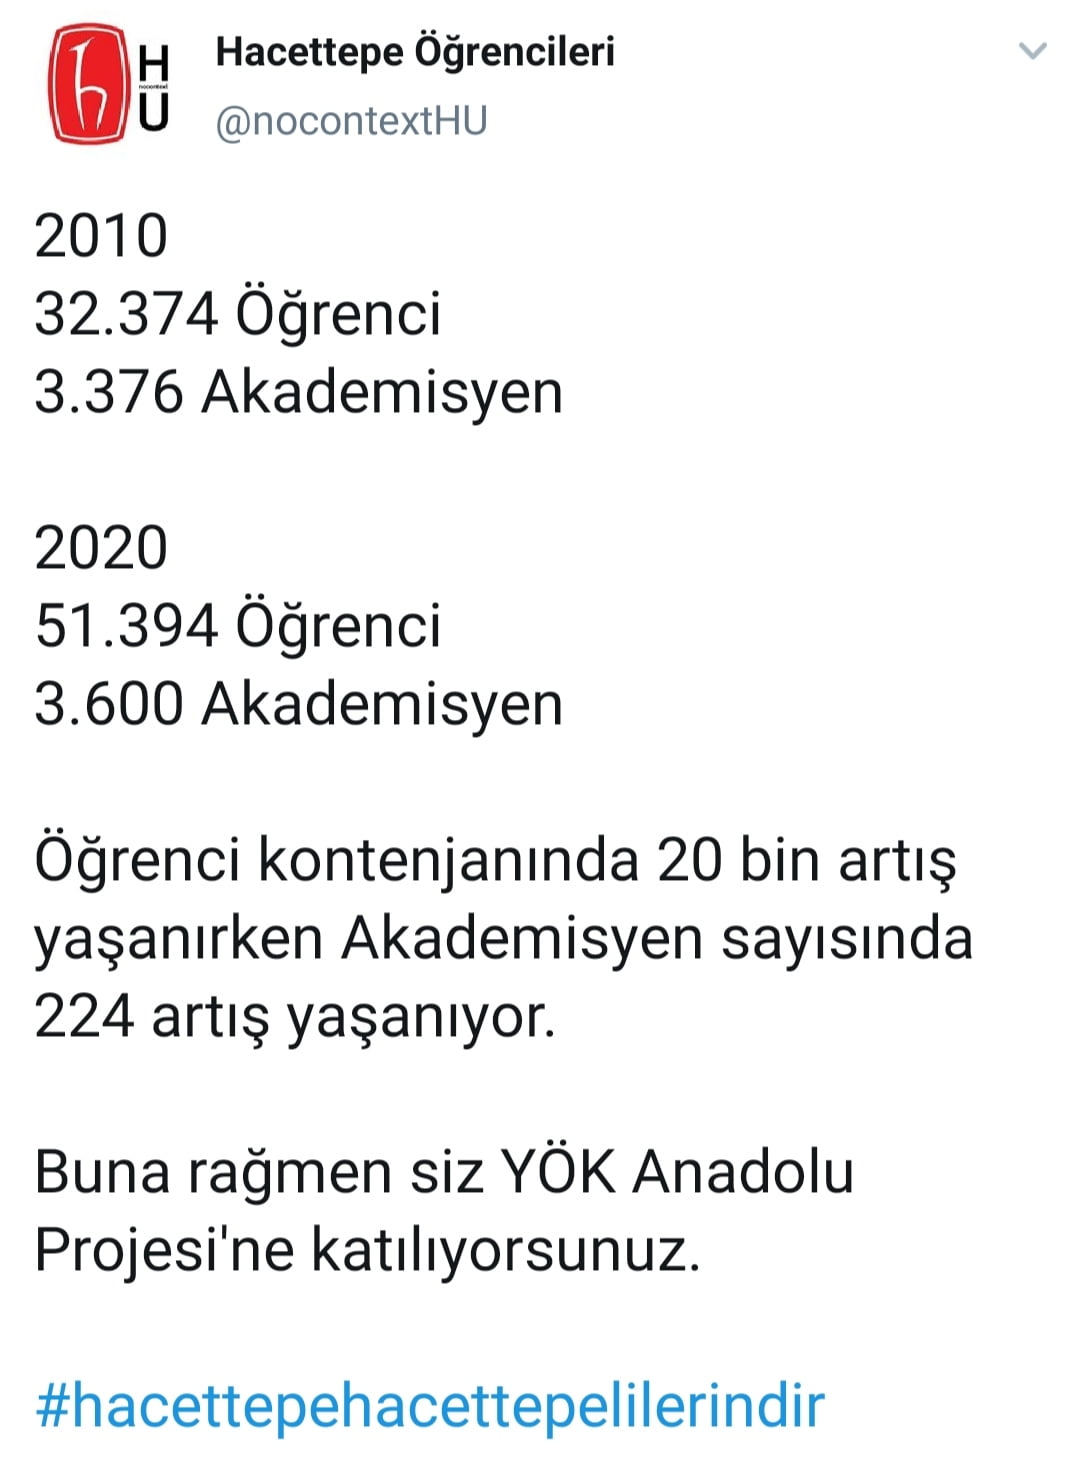 YÖK'ün Anadolu Projesi'ne tepki 2